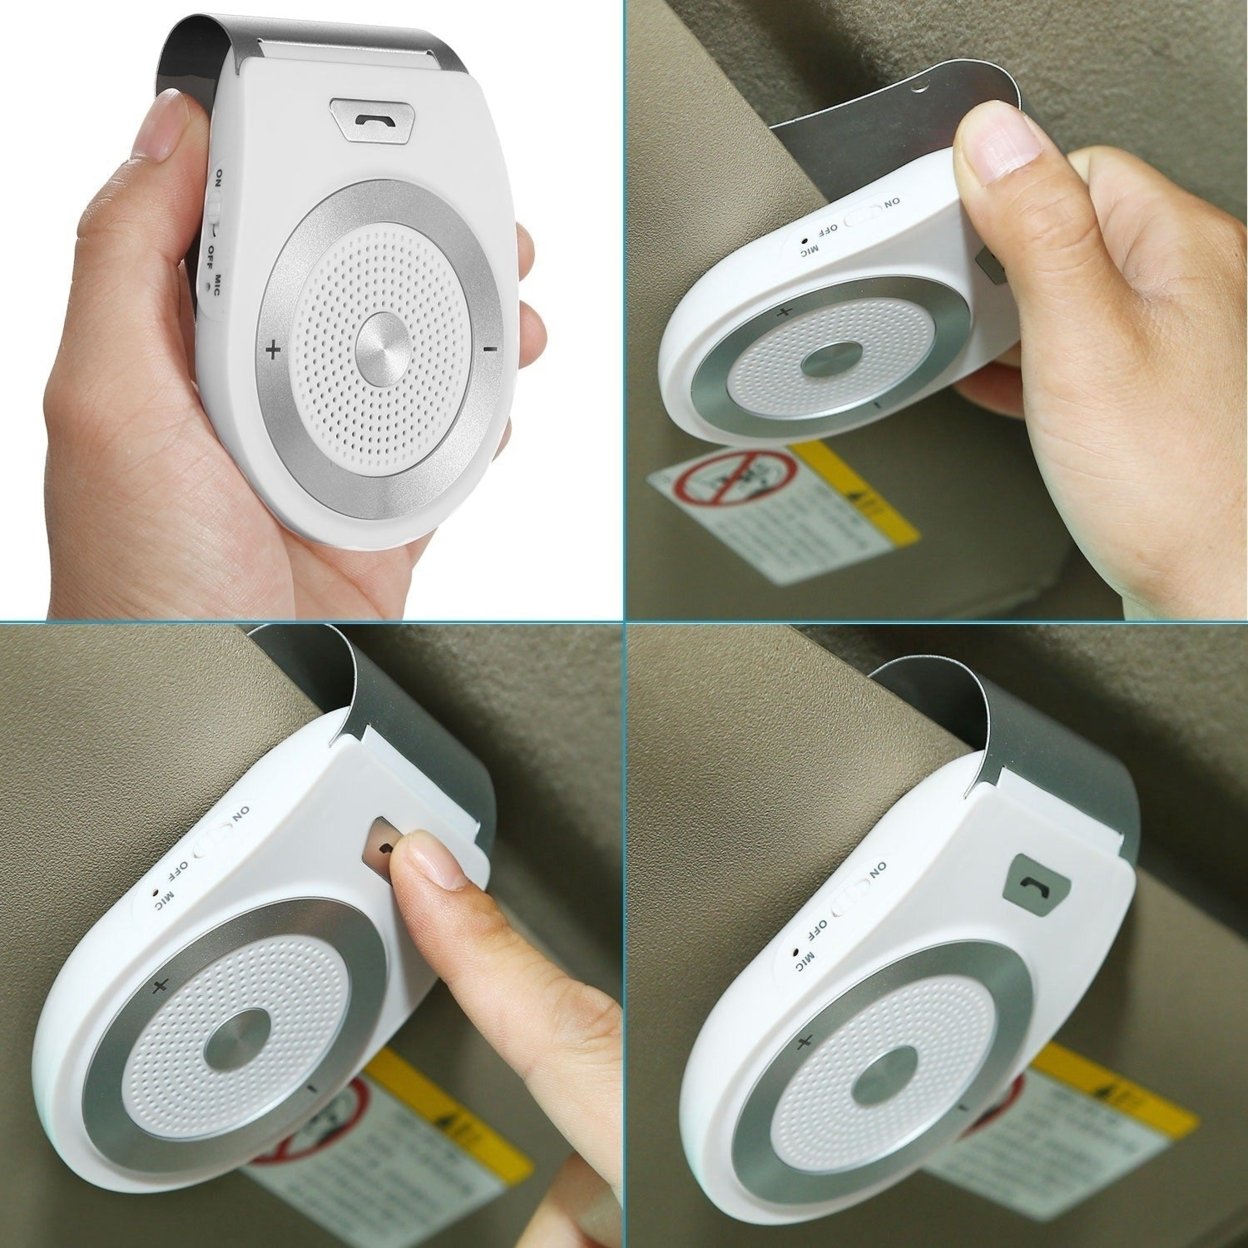 SKUSHOPS Car Wireless Speakerphone Wireless V4.1 In-Car Speaker Hands-free Calling Music Player Sun Visor Audio Receiver Car Kit